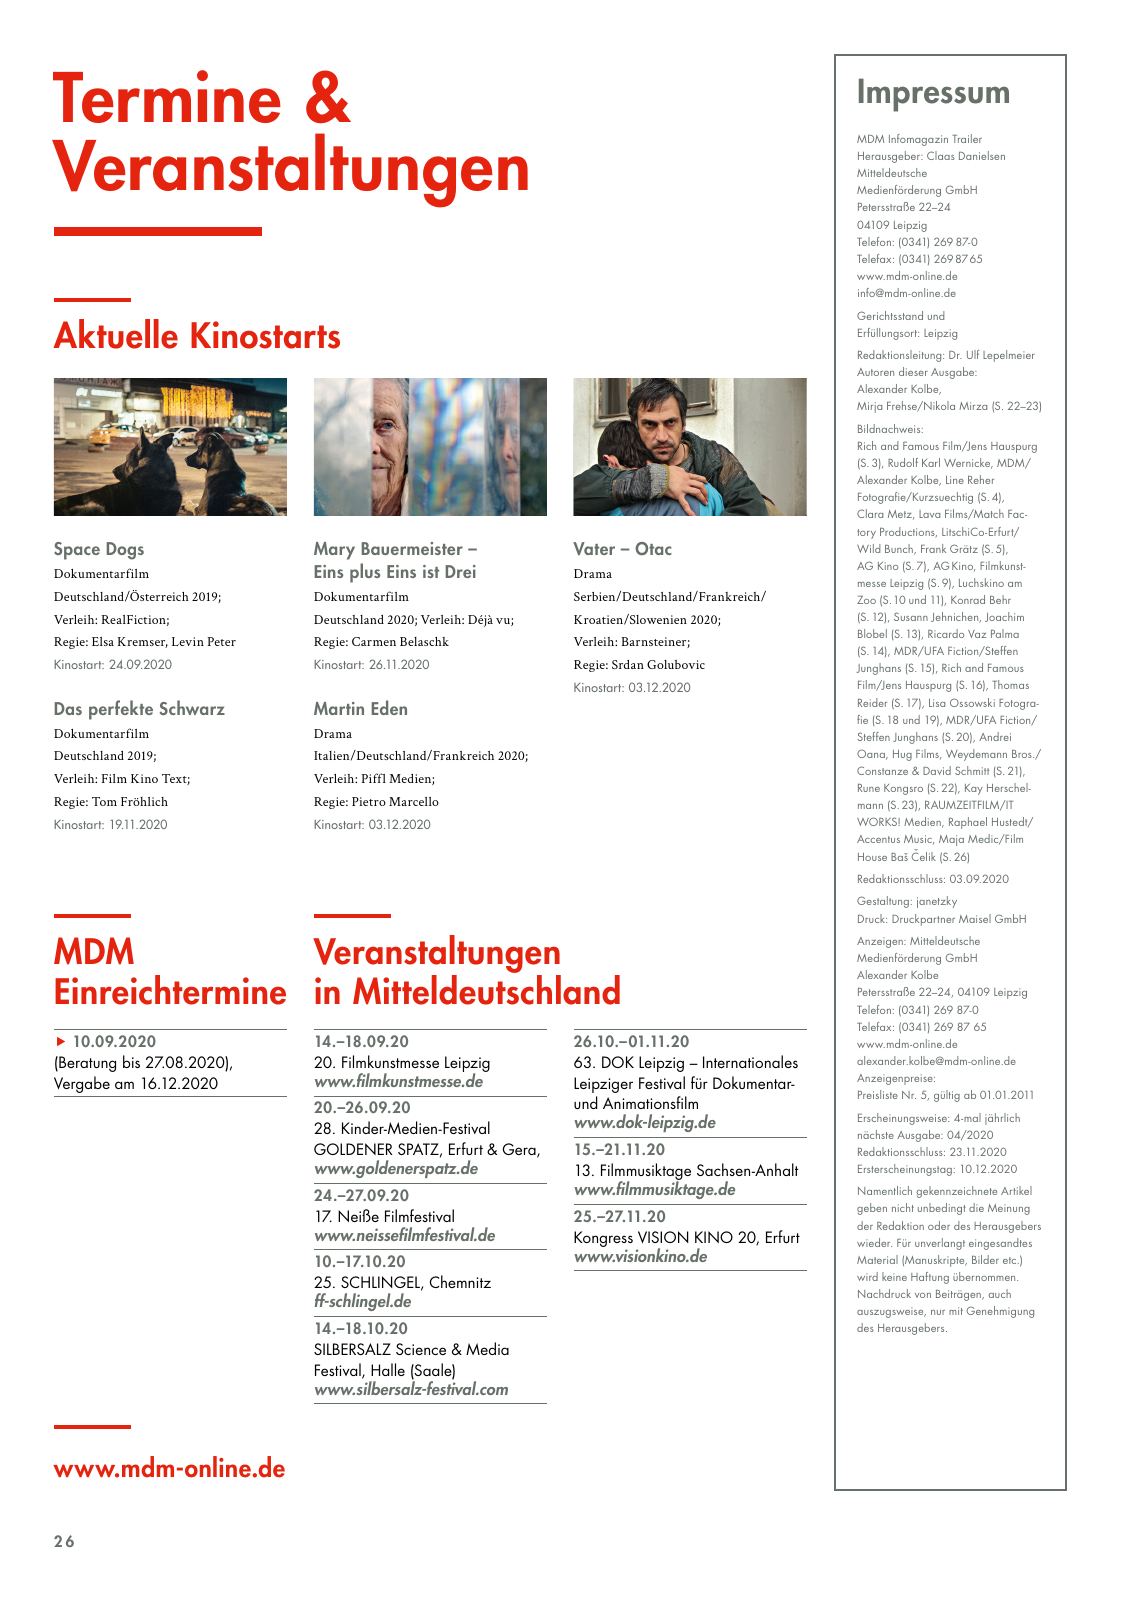 Vorschau MDM Trailer 03/2020 Seite 26